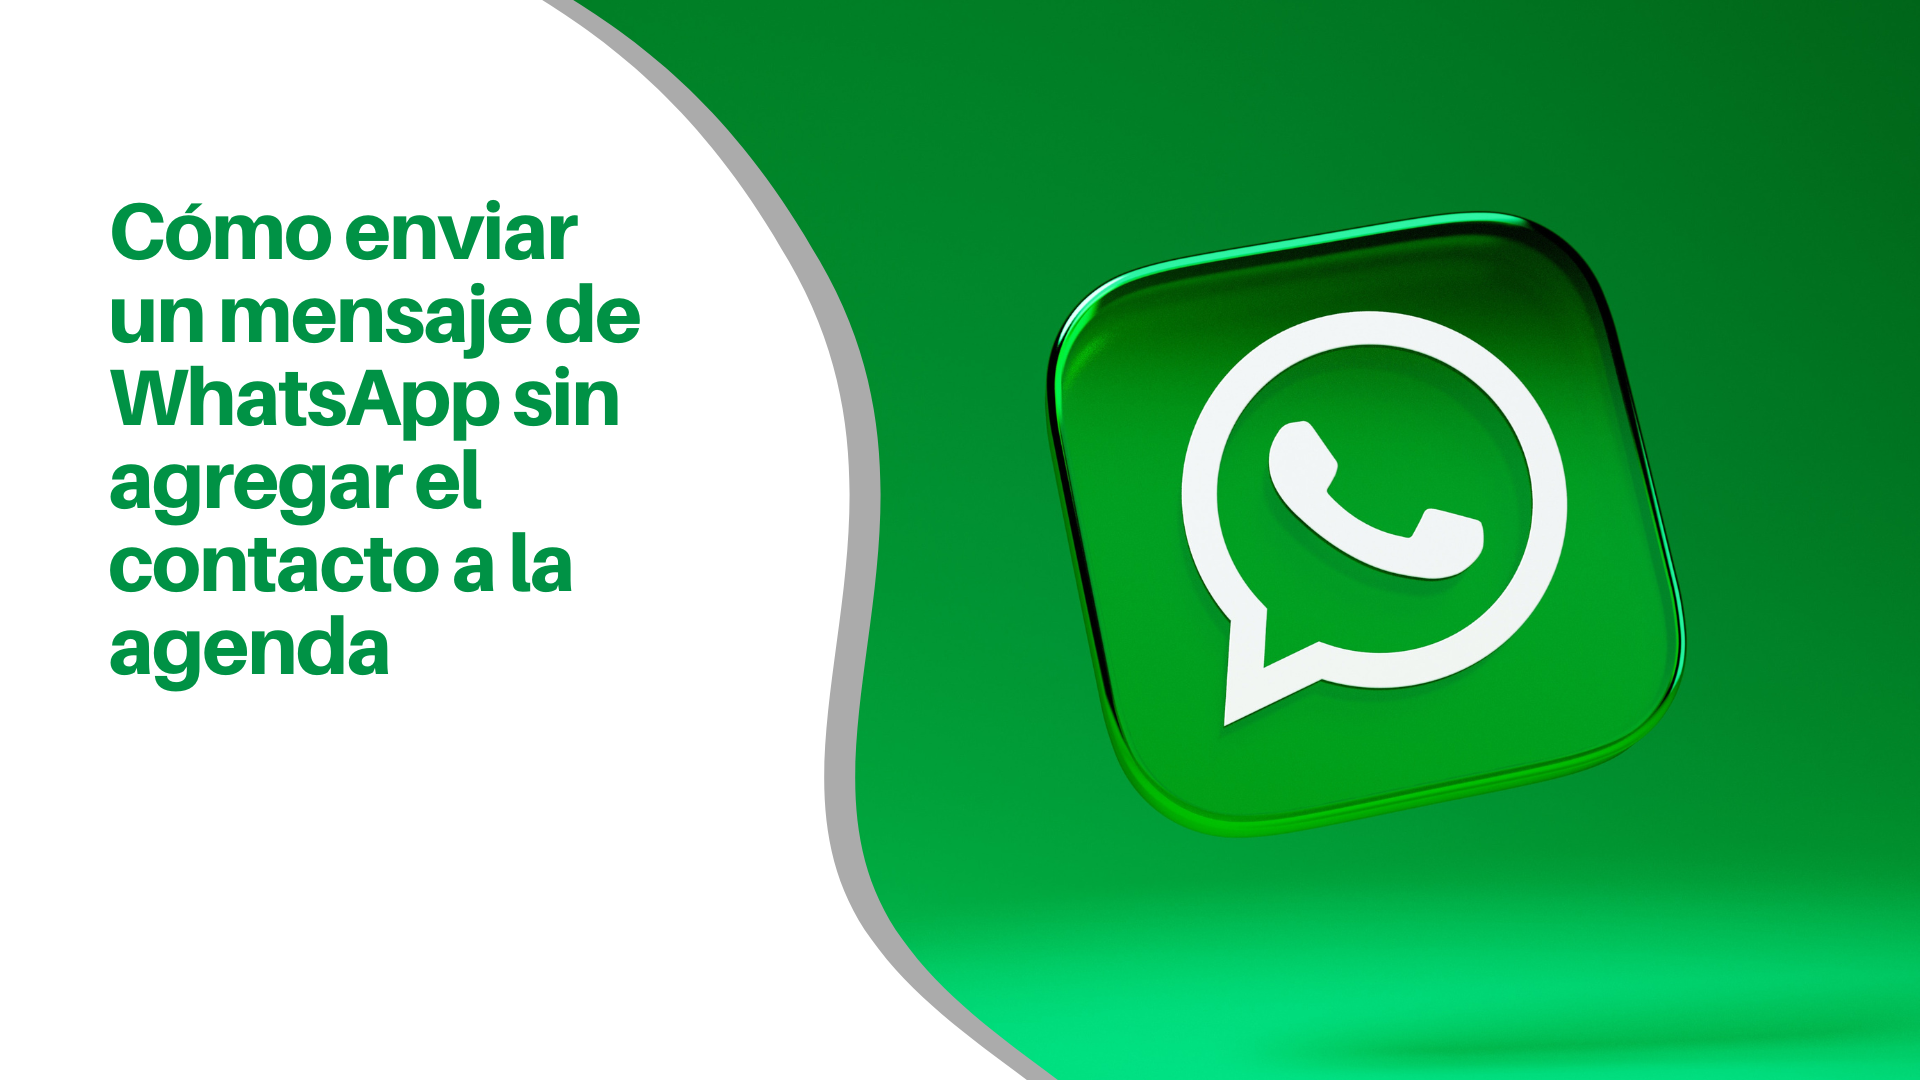 C Mo Enviar Un Mensaje De Whatsapp Sin Agregar El Contacto A La Agenda